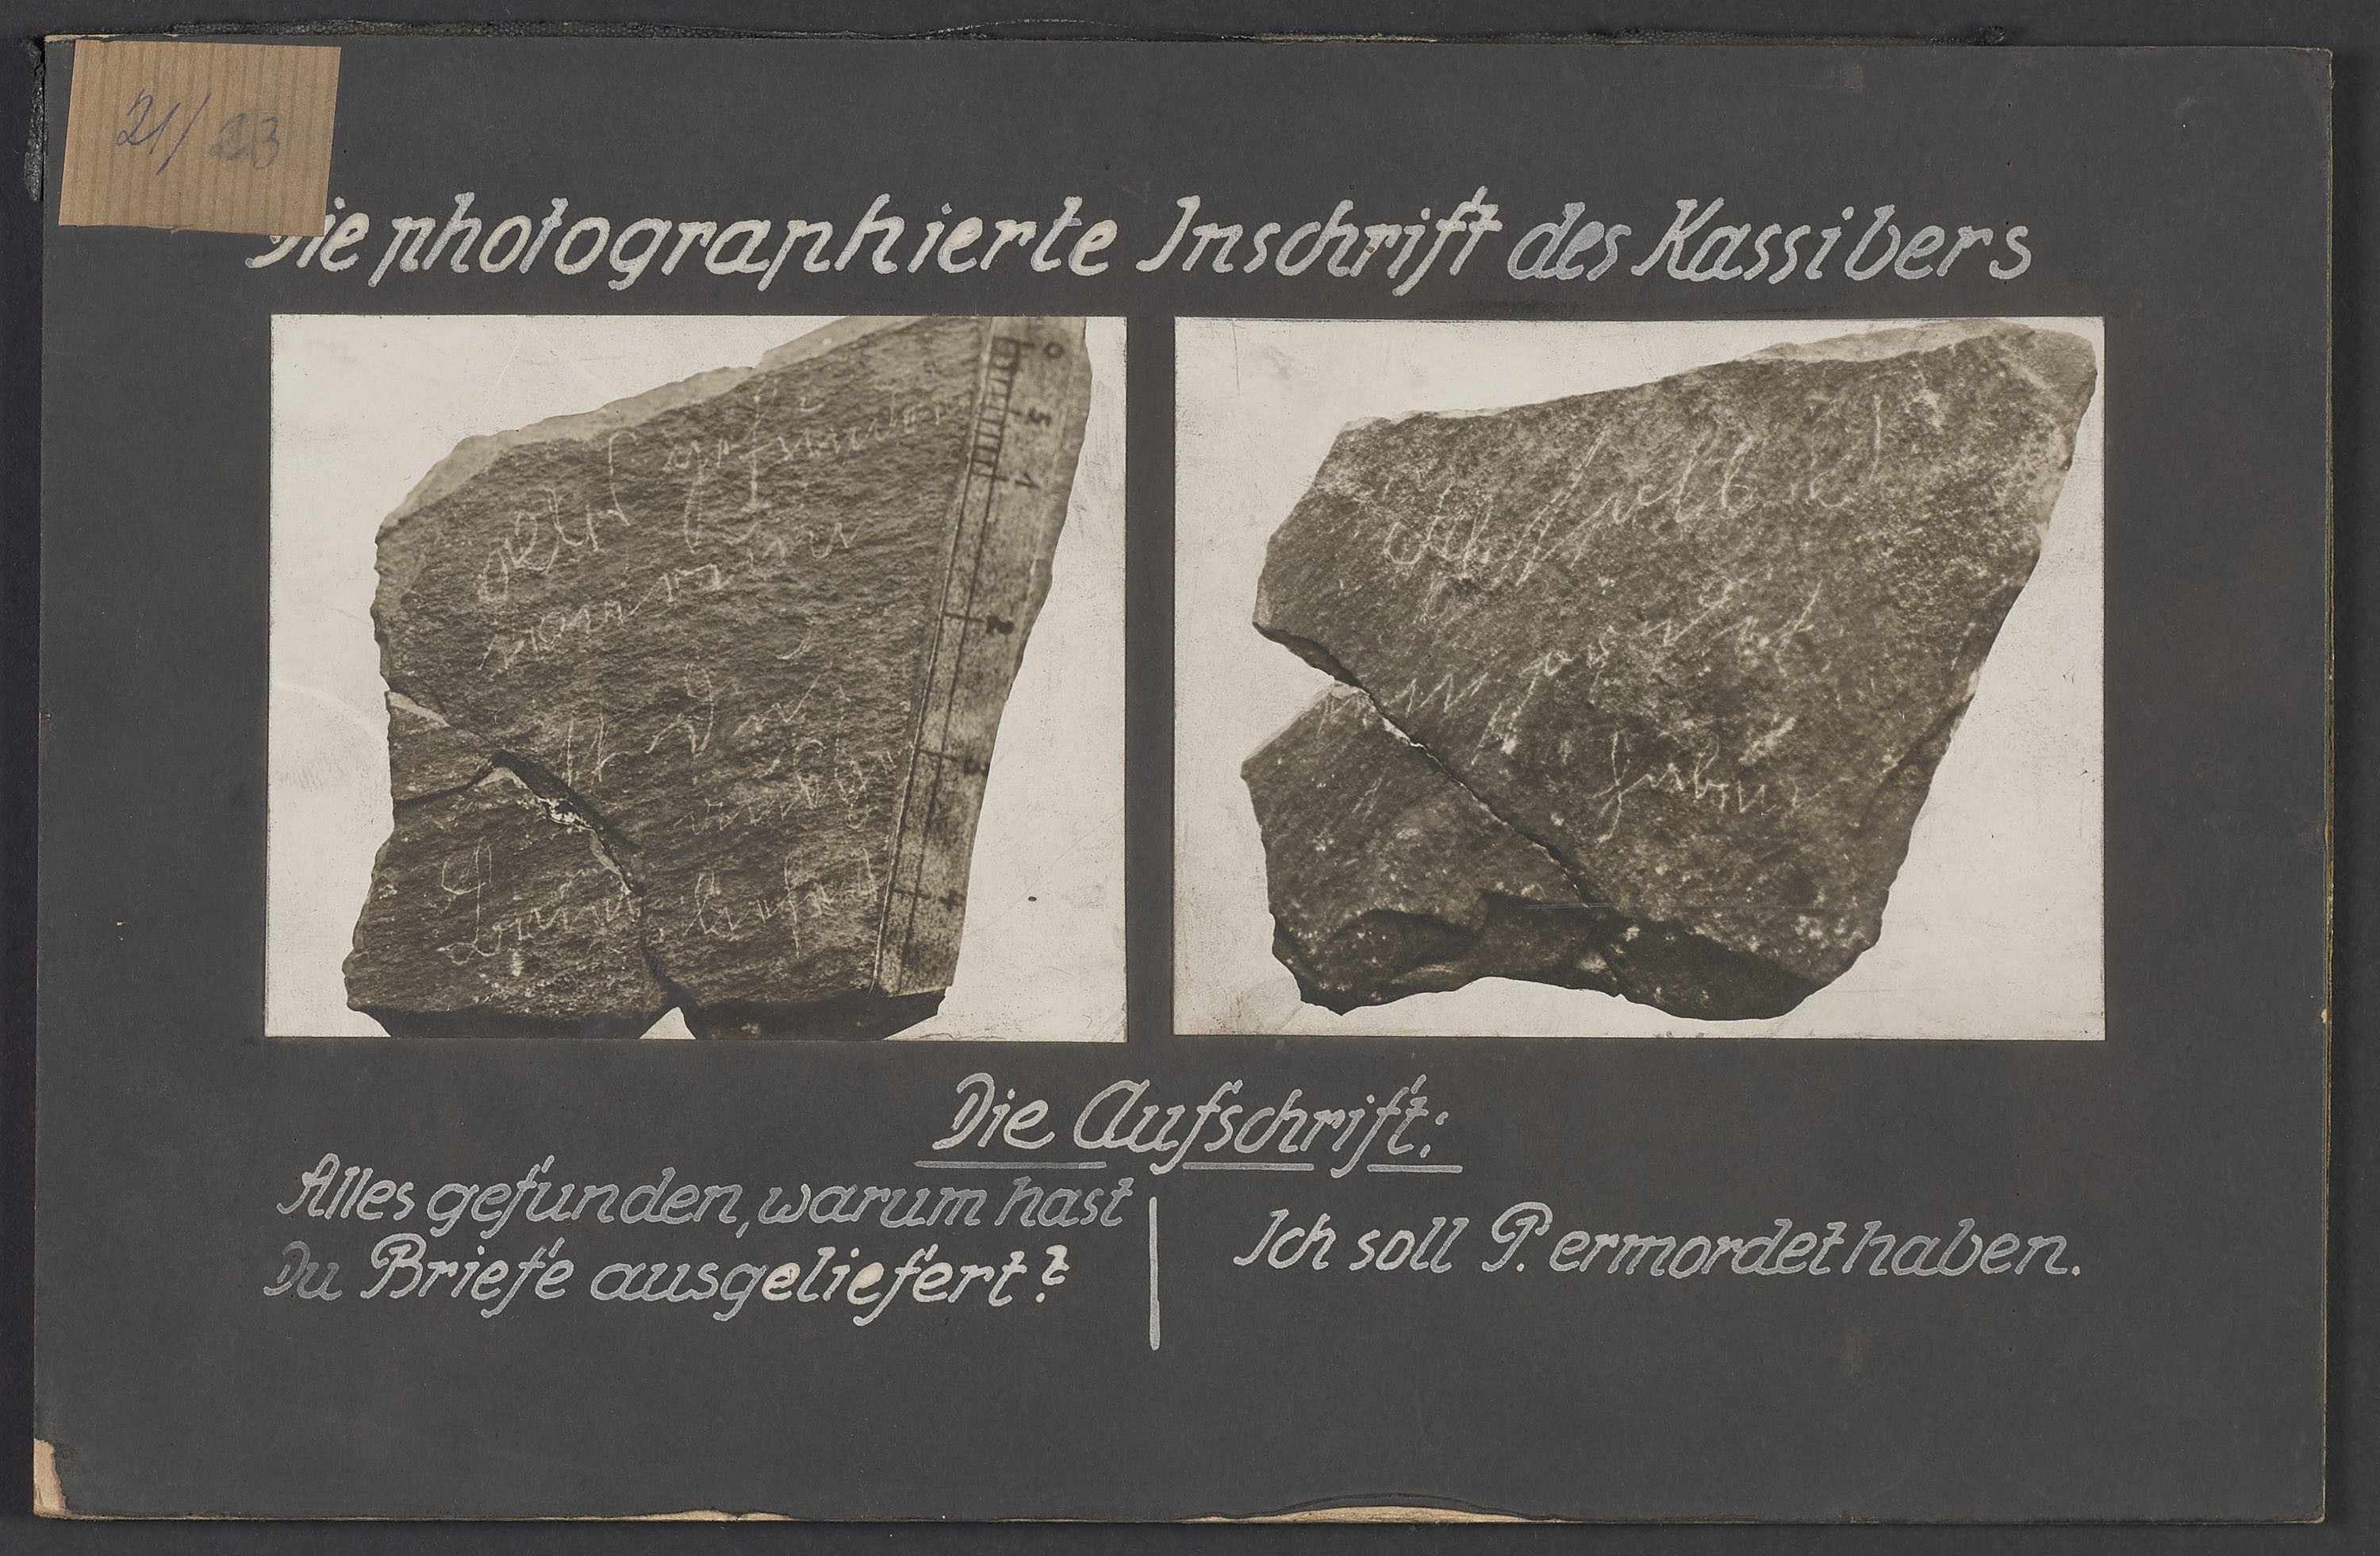 Lehrtafel "Die photographierte Inschrift des Kassibers" (Polizeidirektion Dresden RR-F)